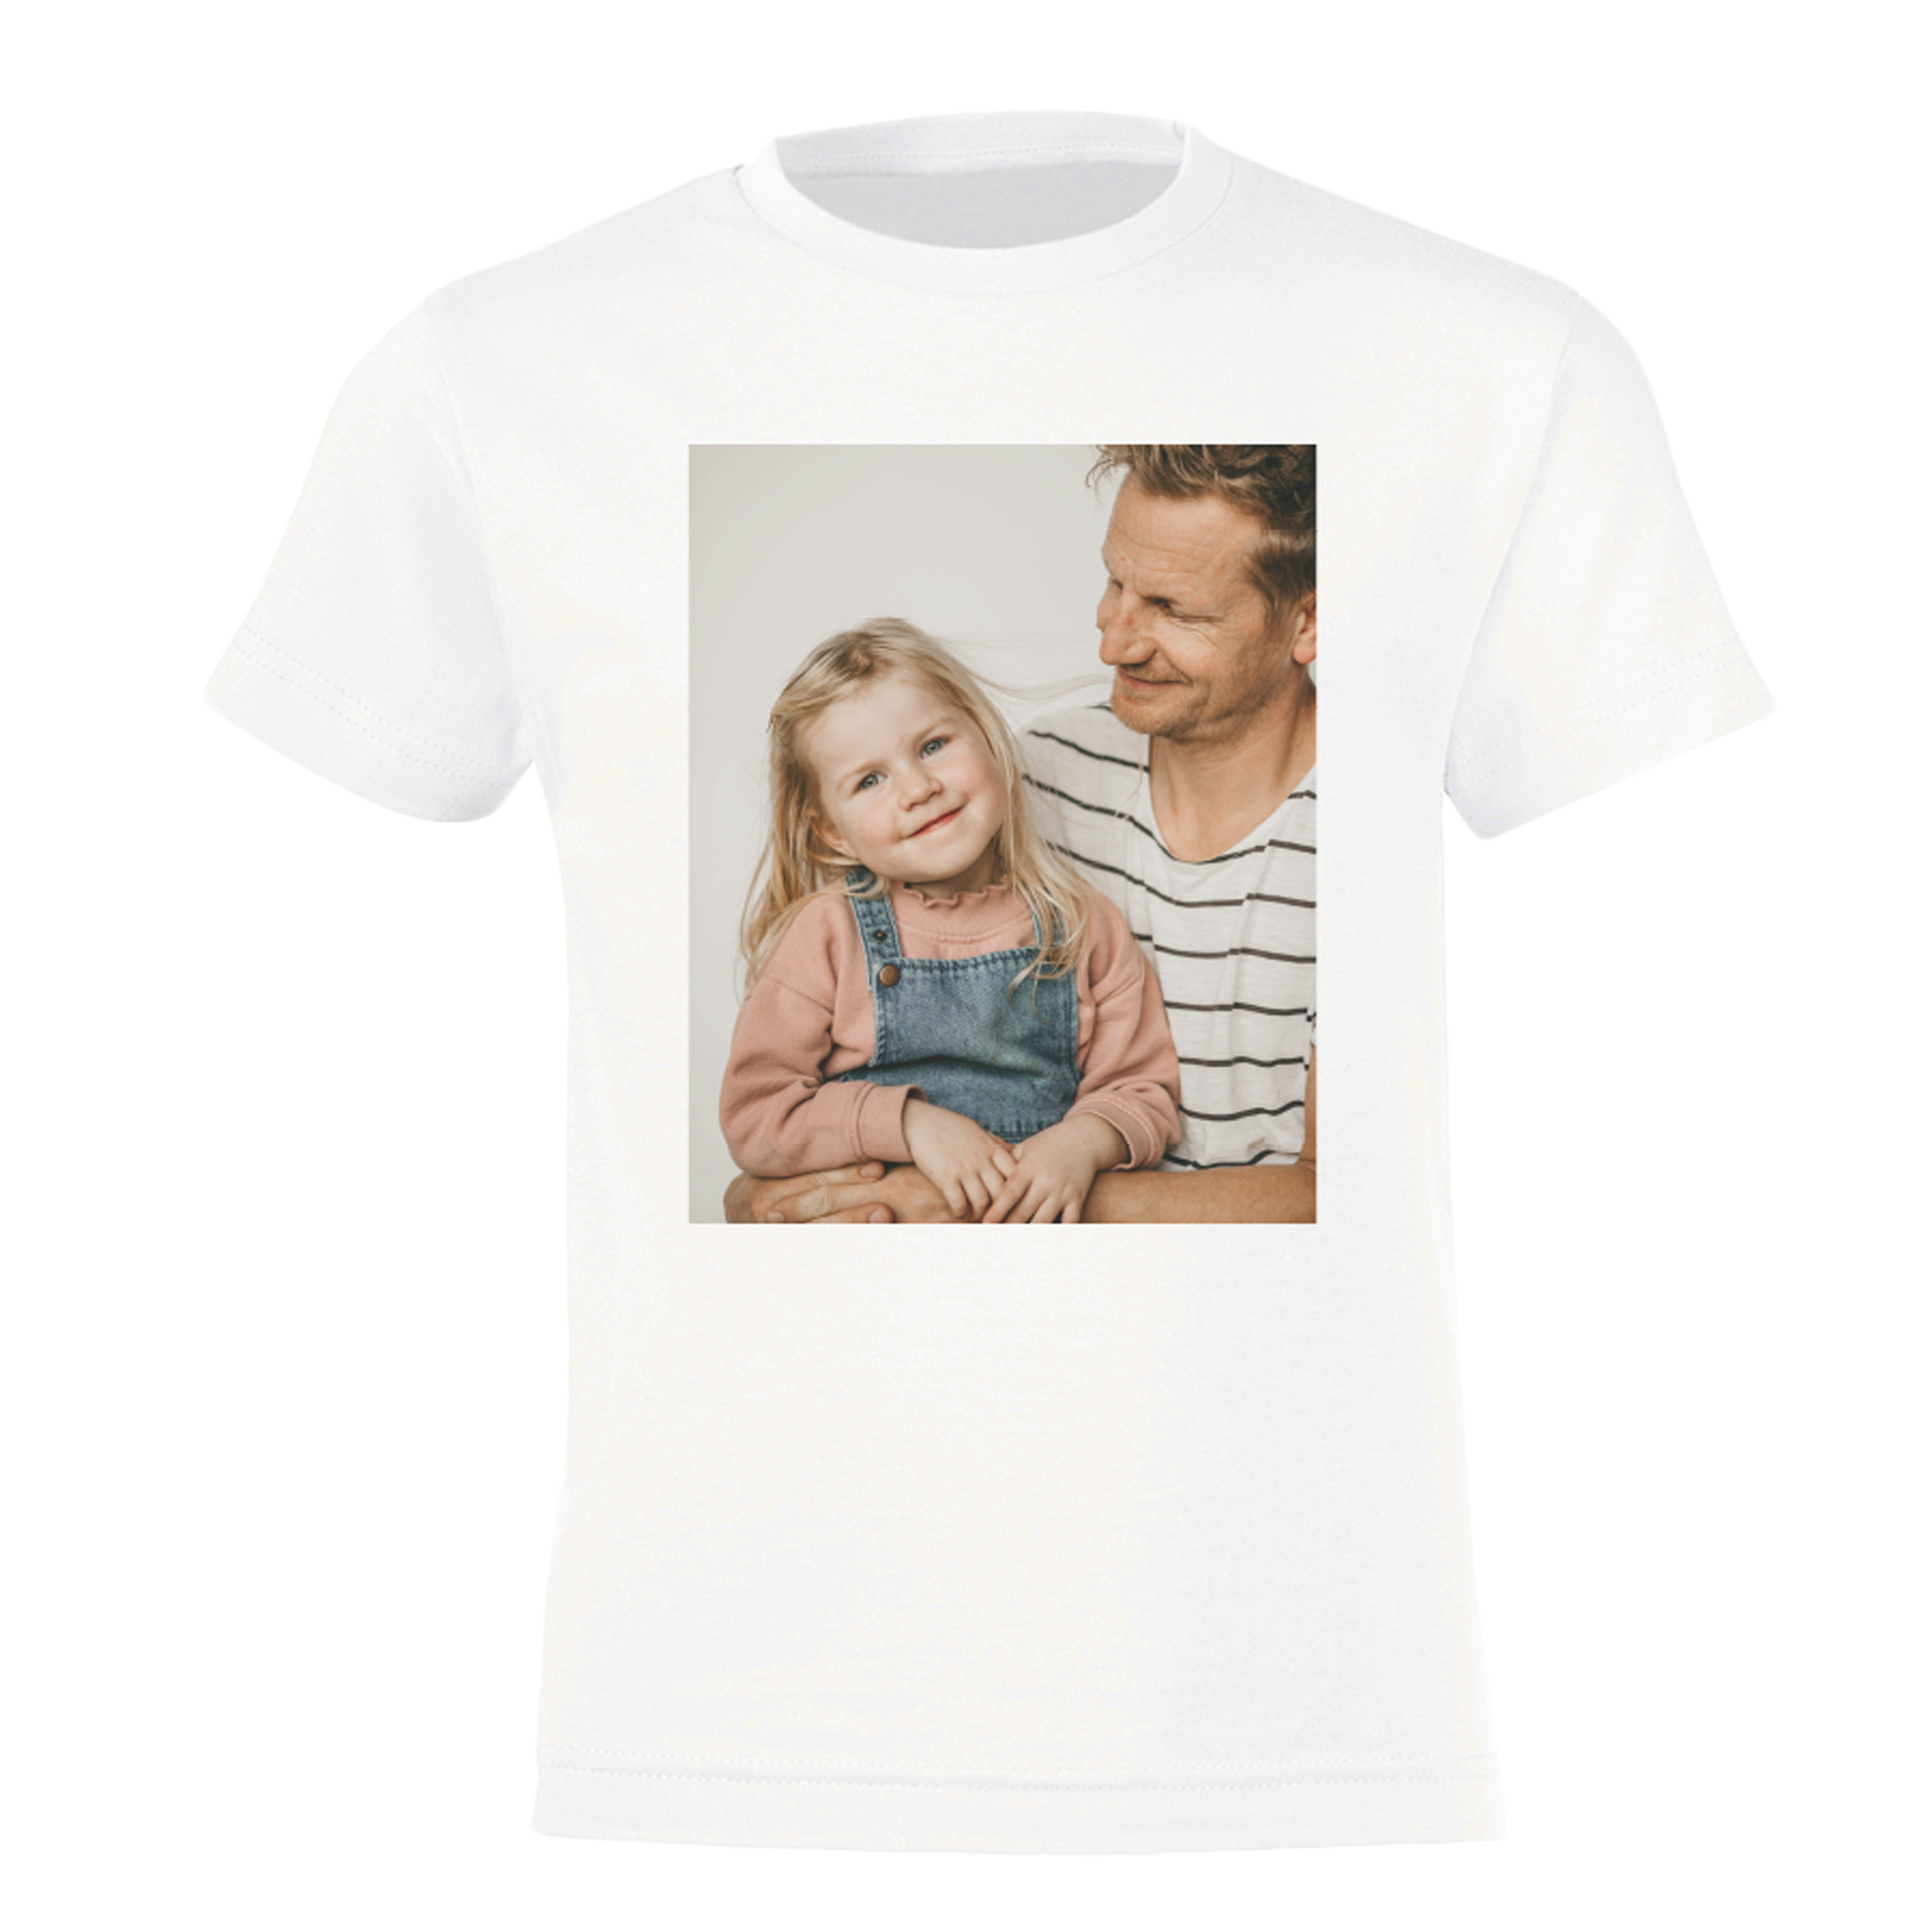 Personalised T-shirt children - White - 98